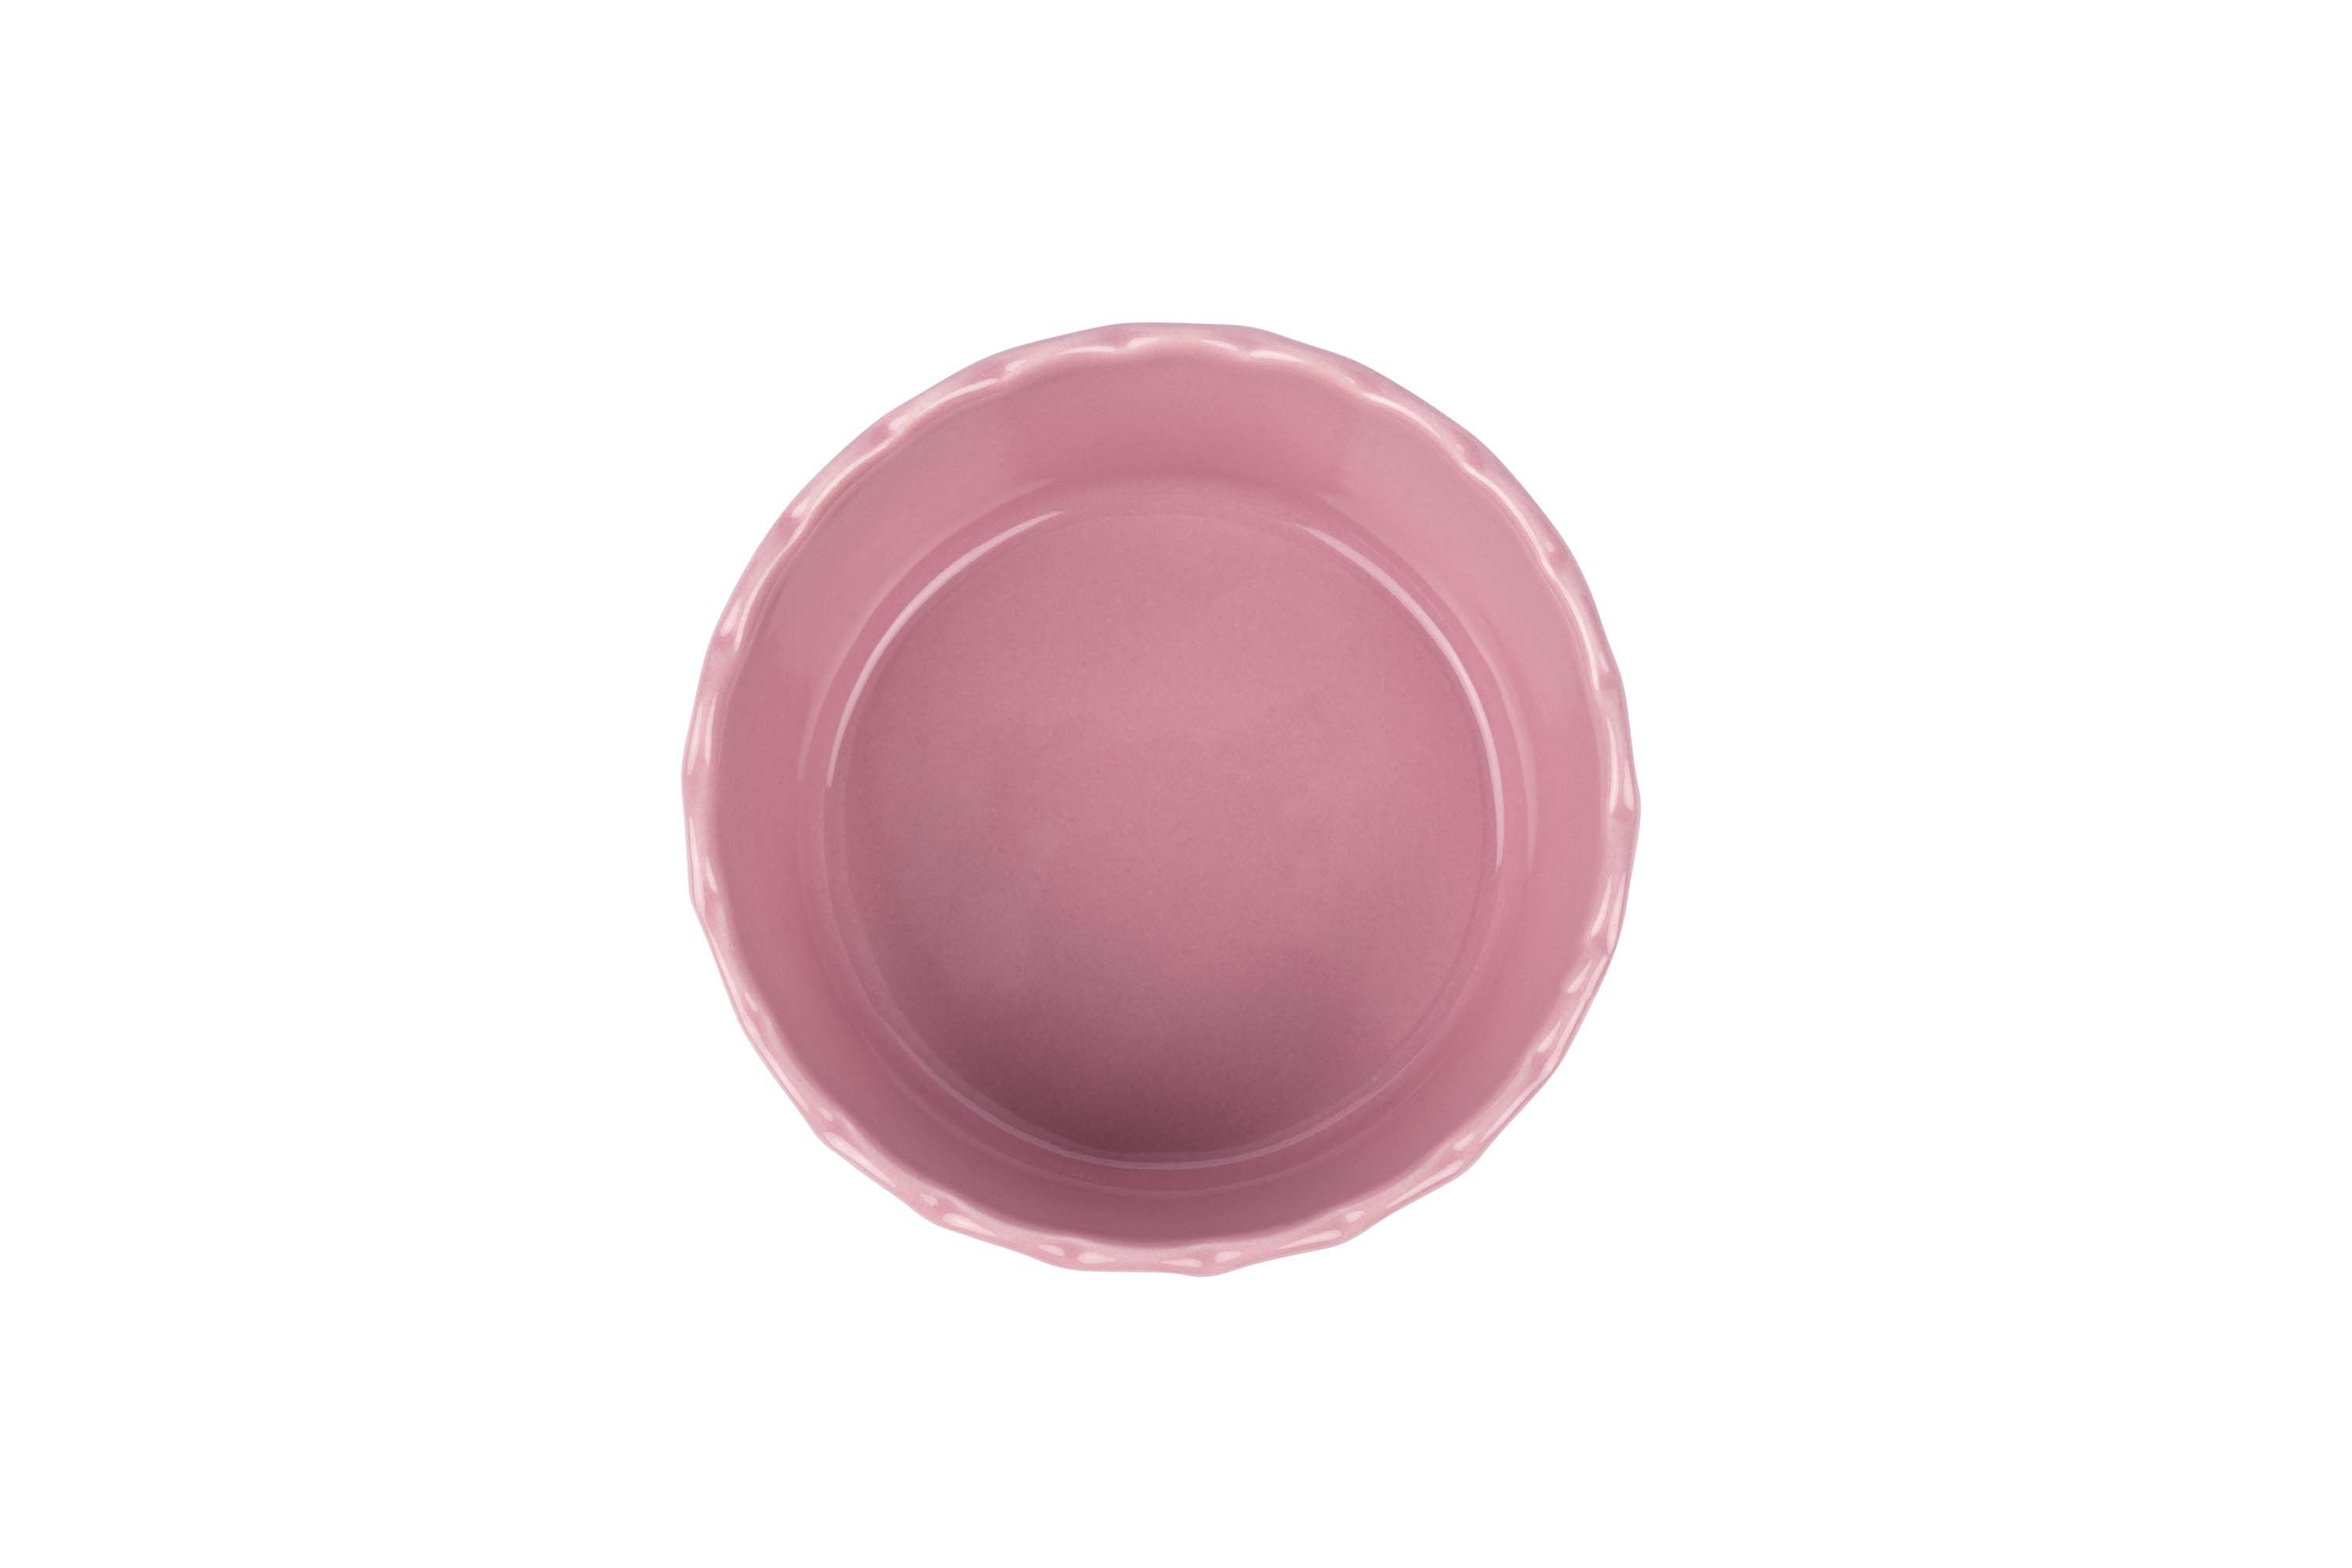 Blick von oben auf die kleine, runde, rosa Stoneware-Ofenform